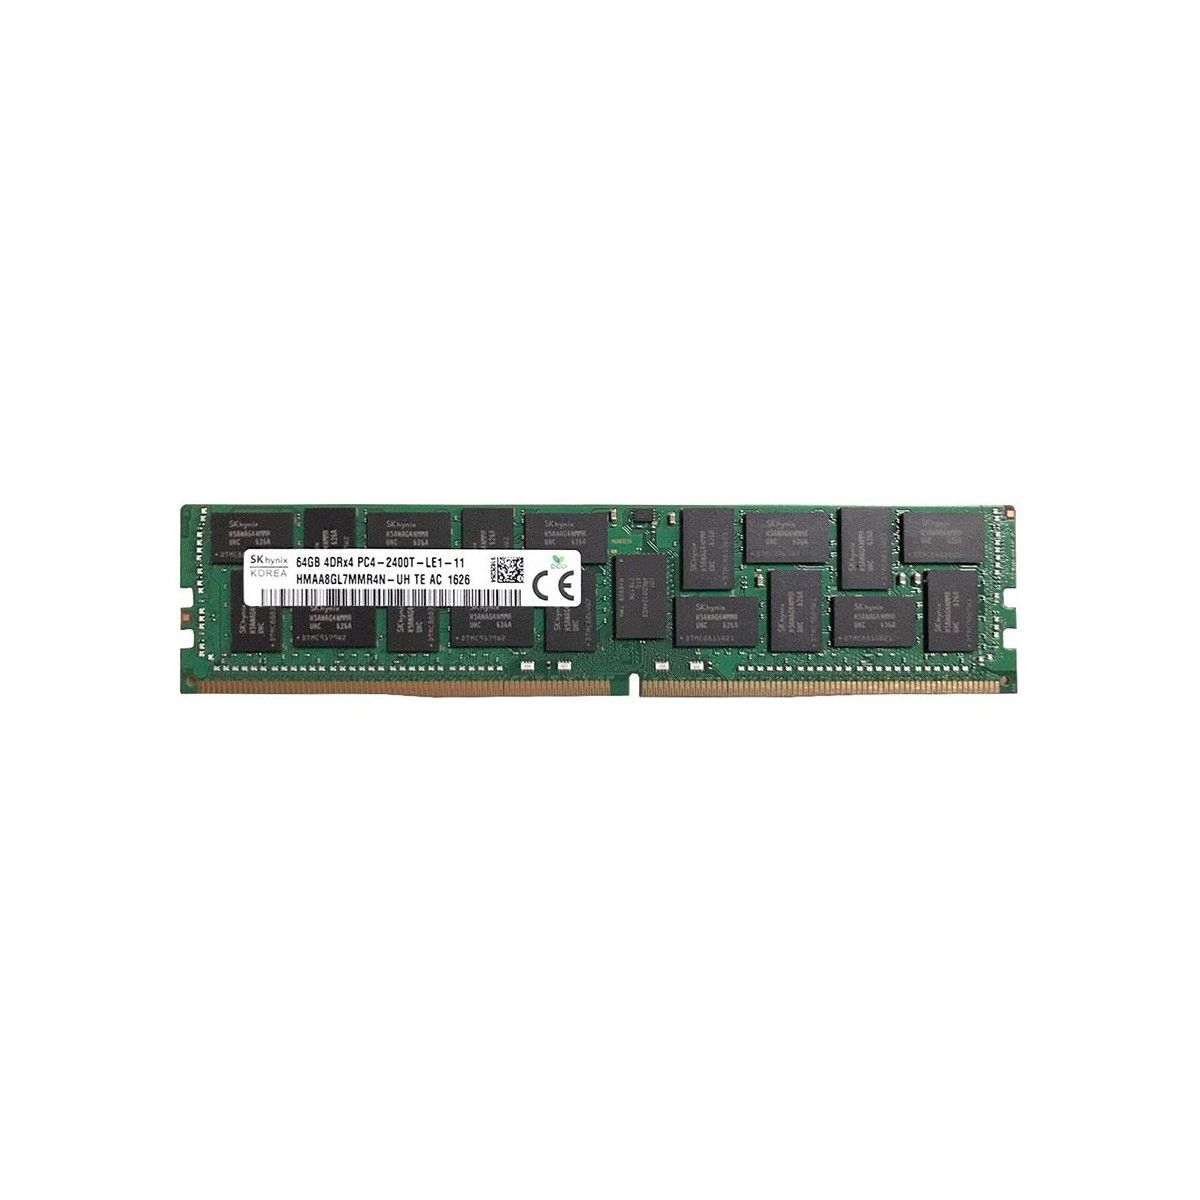 S26361-F3934-E617-MS -JA- Memstar 1x 64GB DDR4-2400 LRDIMM PC4-19200T-R